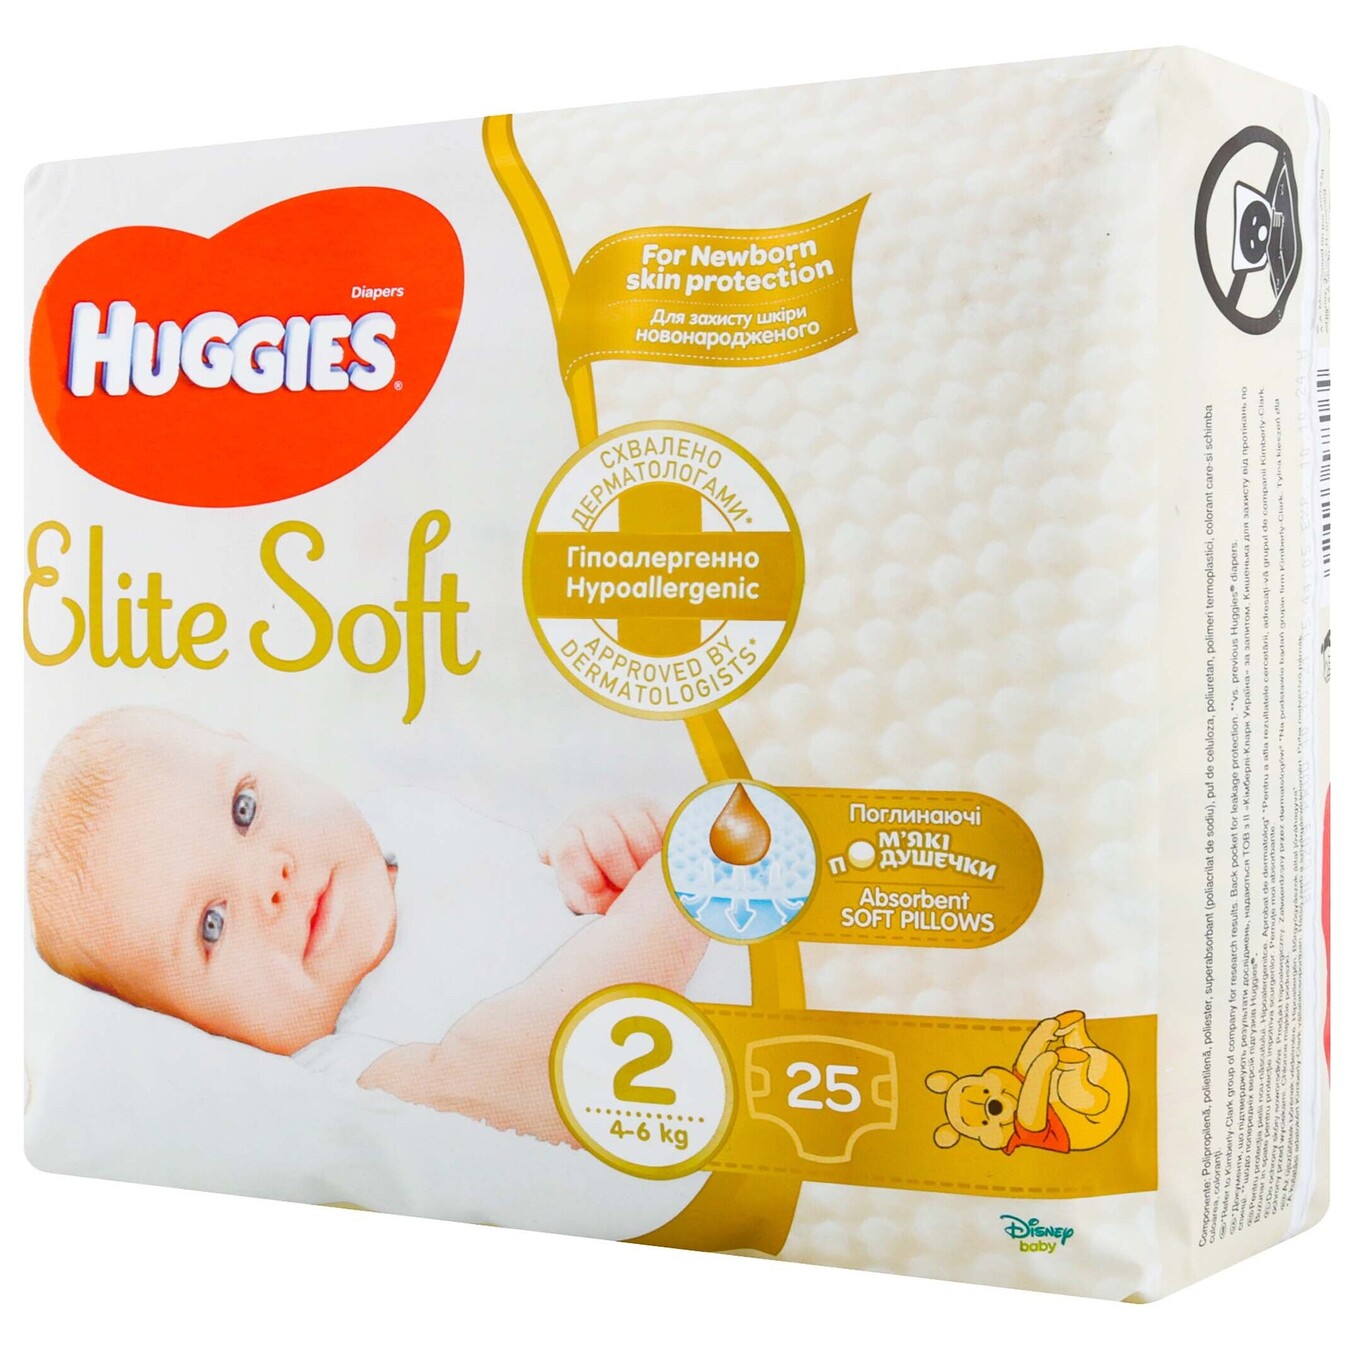 Huggies Diaper Elite Soft 25 pcs 2